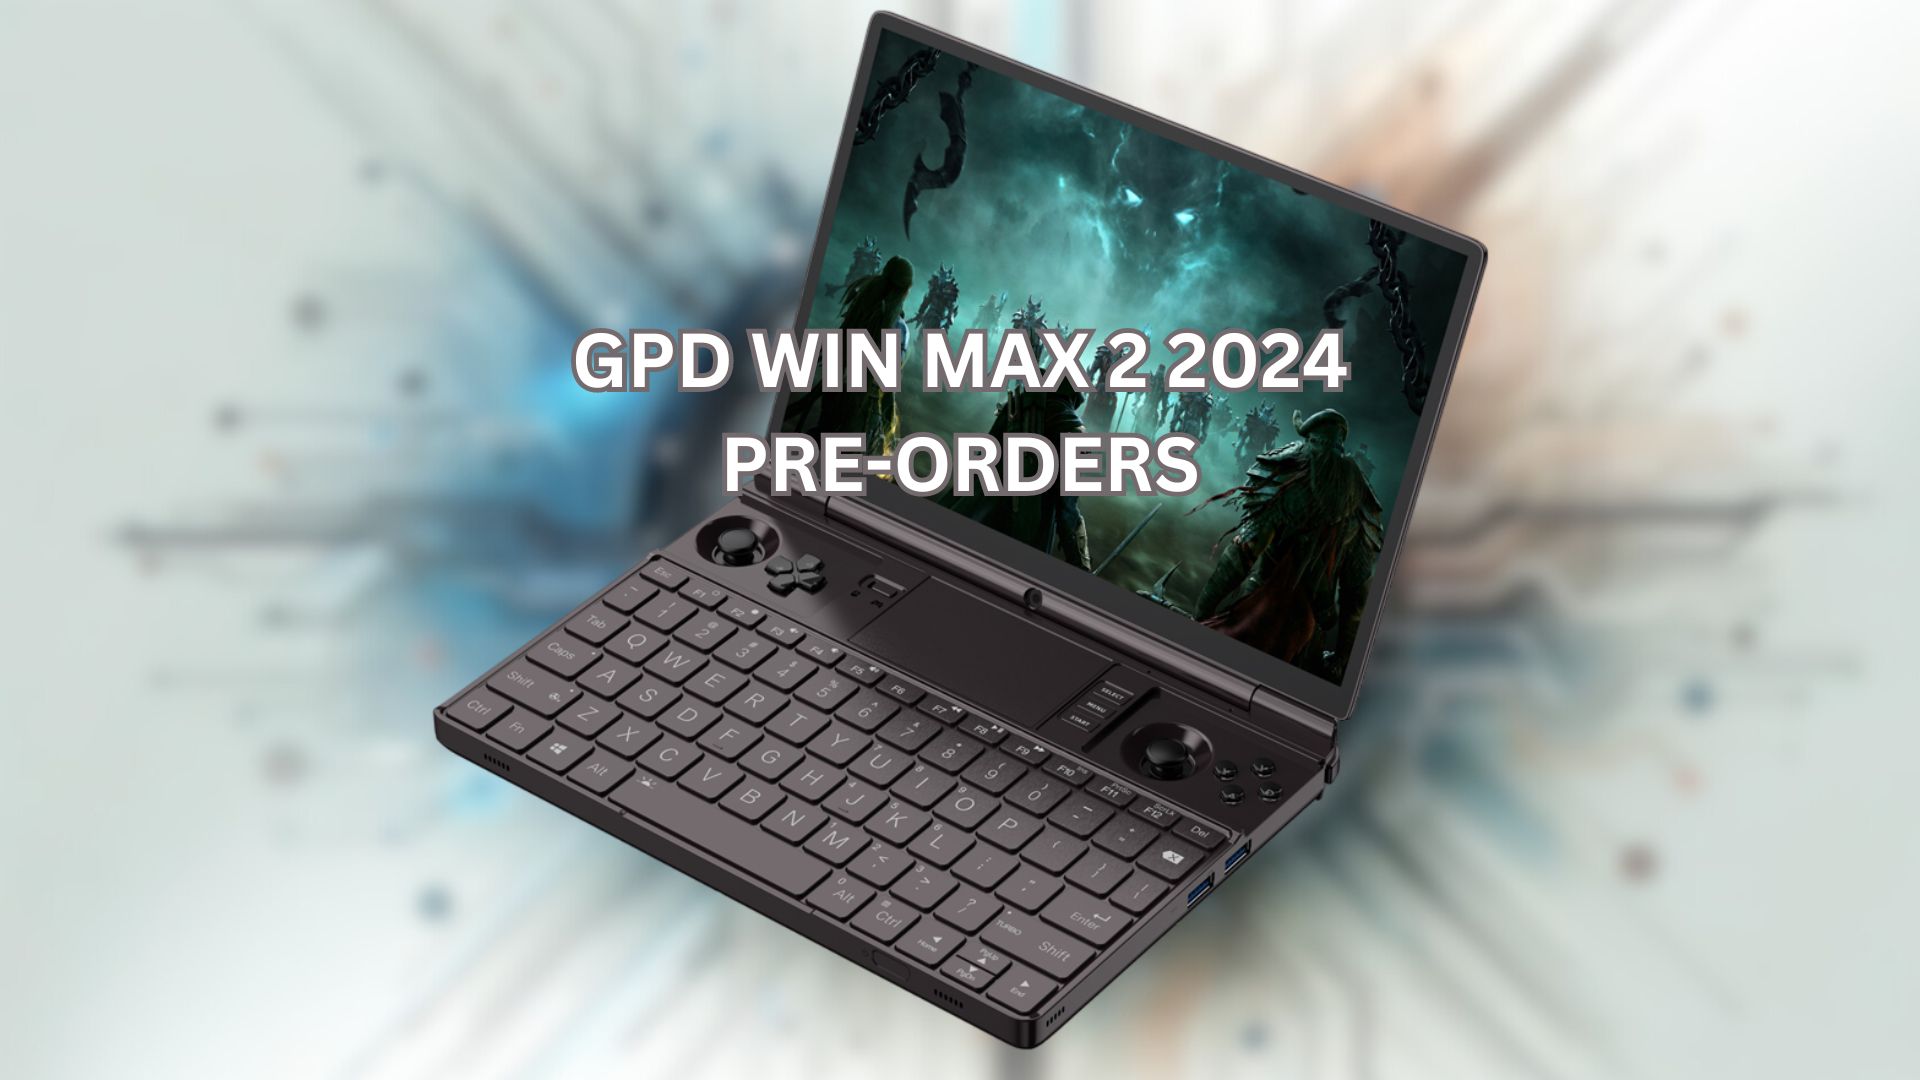 GPD WIN MAX 2 2024 pre-orders – The Ultimate Handheld Gaming PC